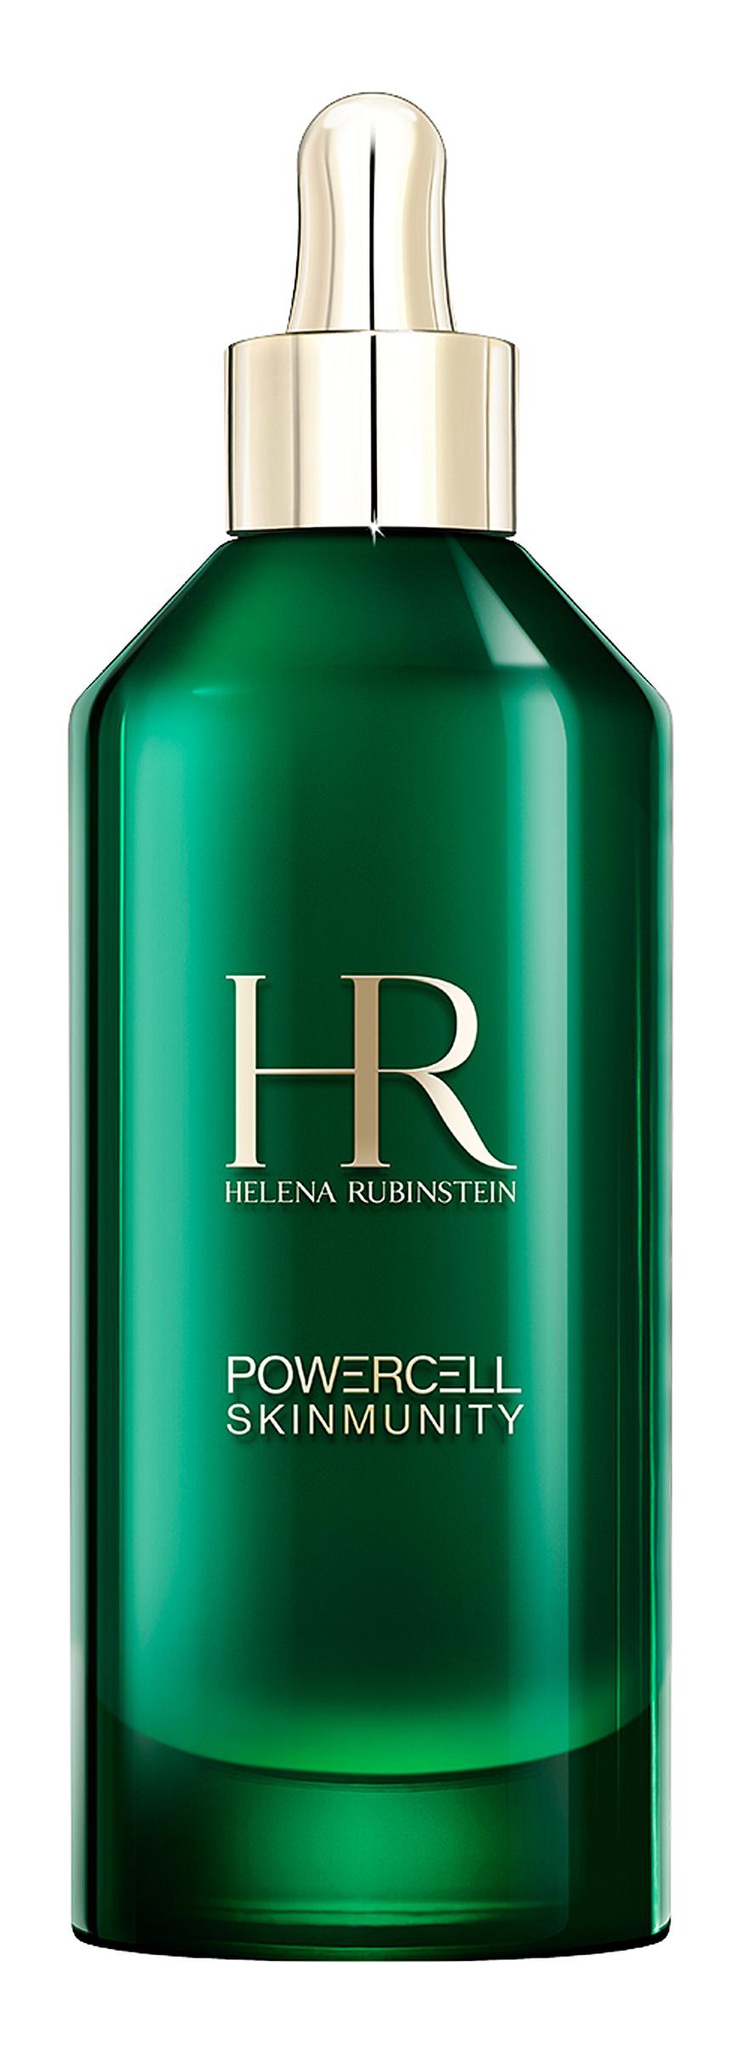 Helena Rubinstein Powercell Skinmunity Serum